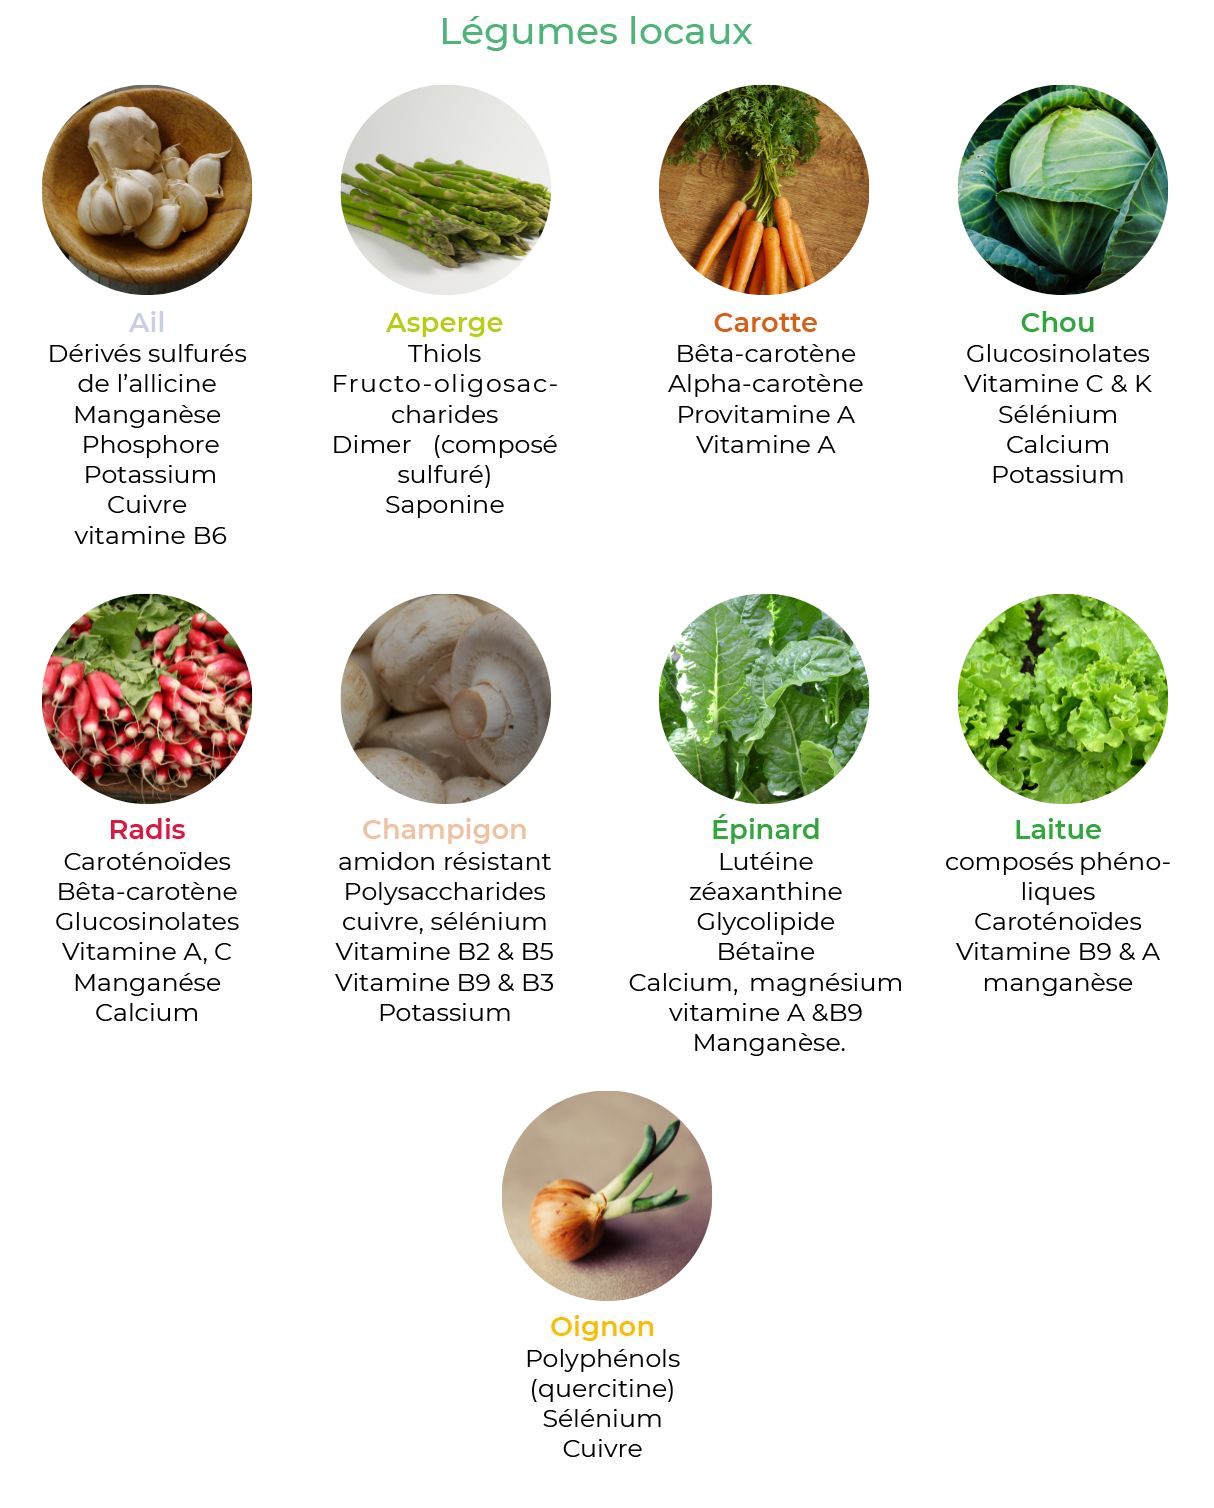 Les fruits et légumes à consommer en mai - Conseils santé bien-être